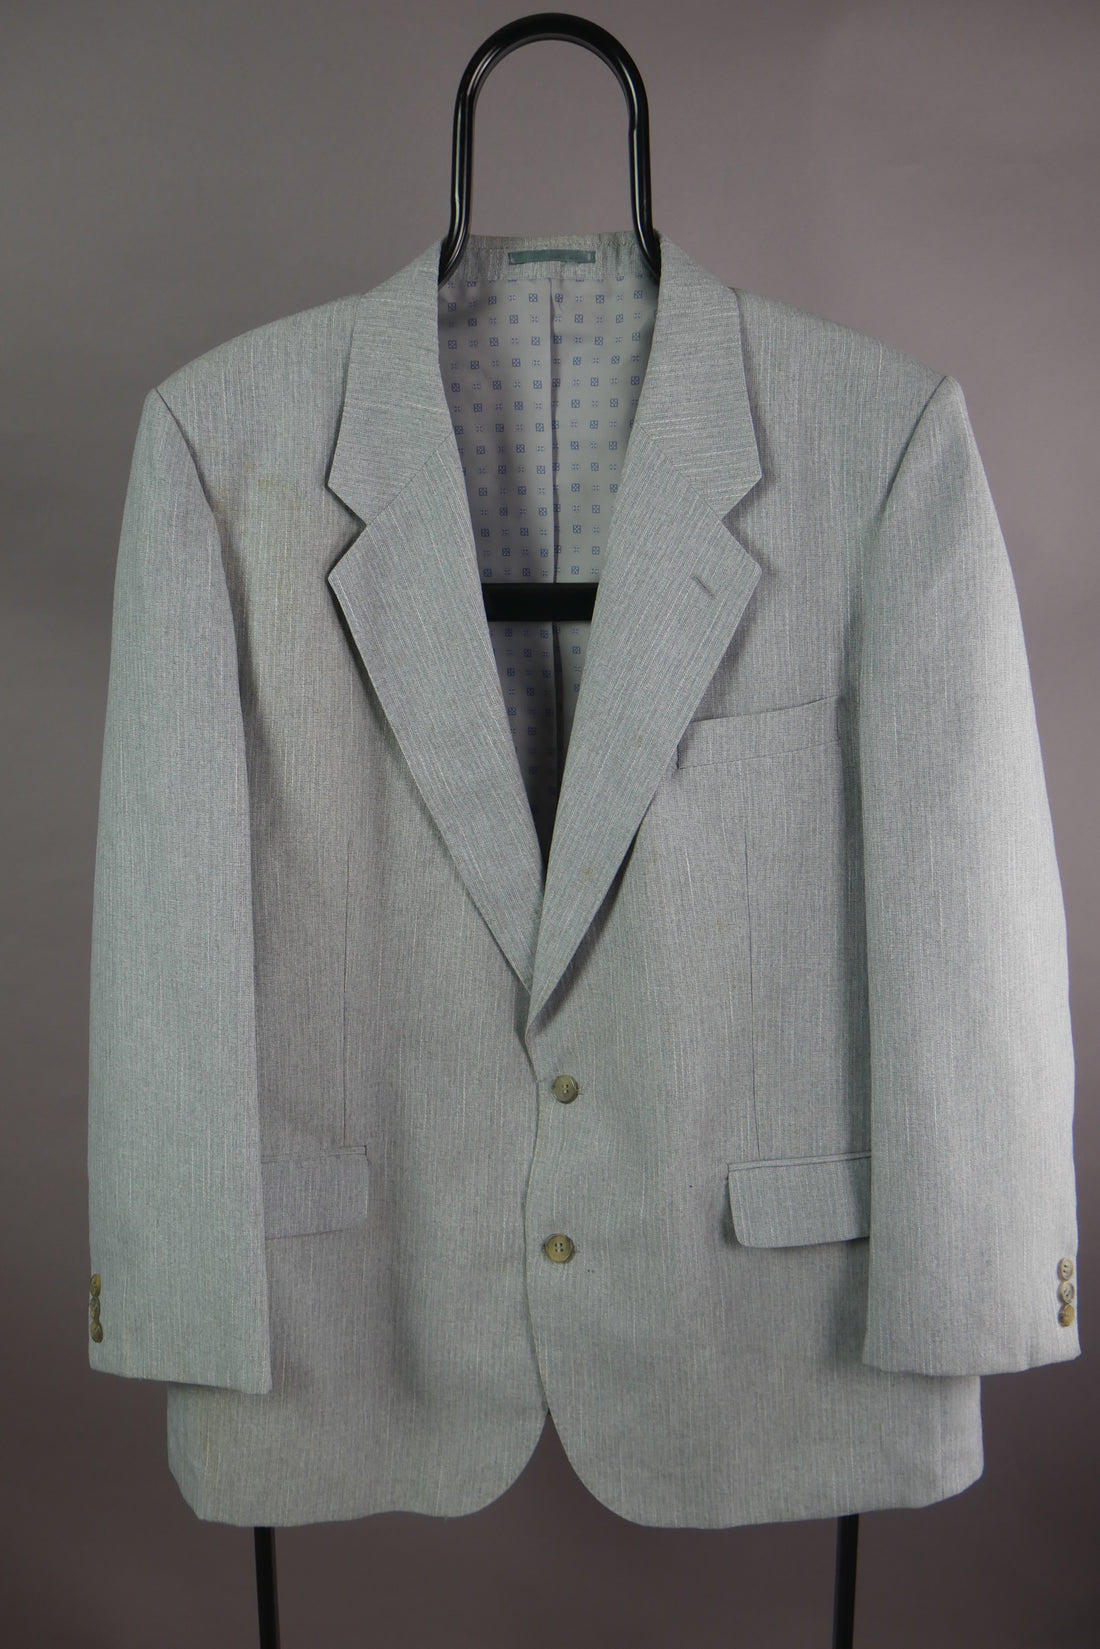 The Classic Vintage Suit Jacket (46R)